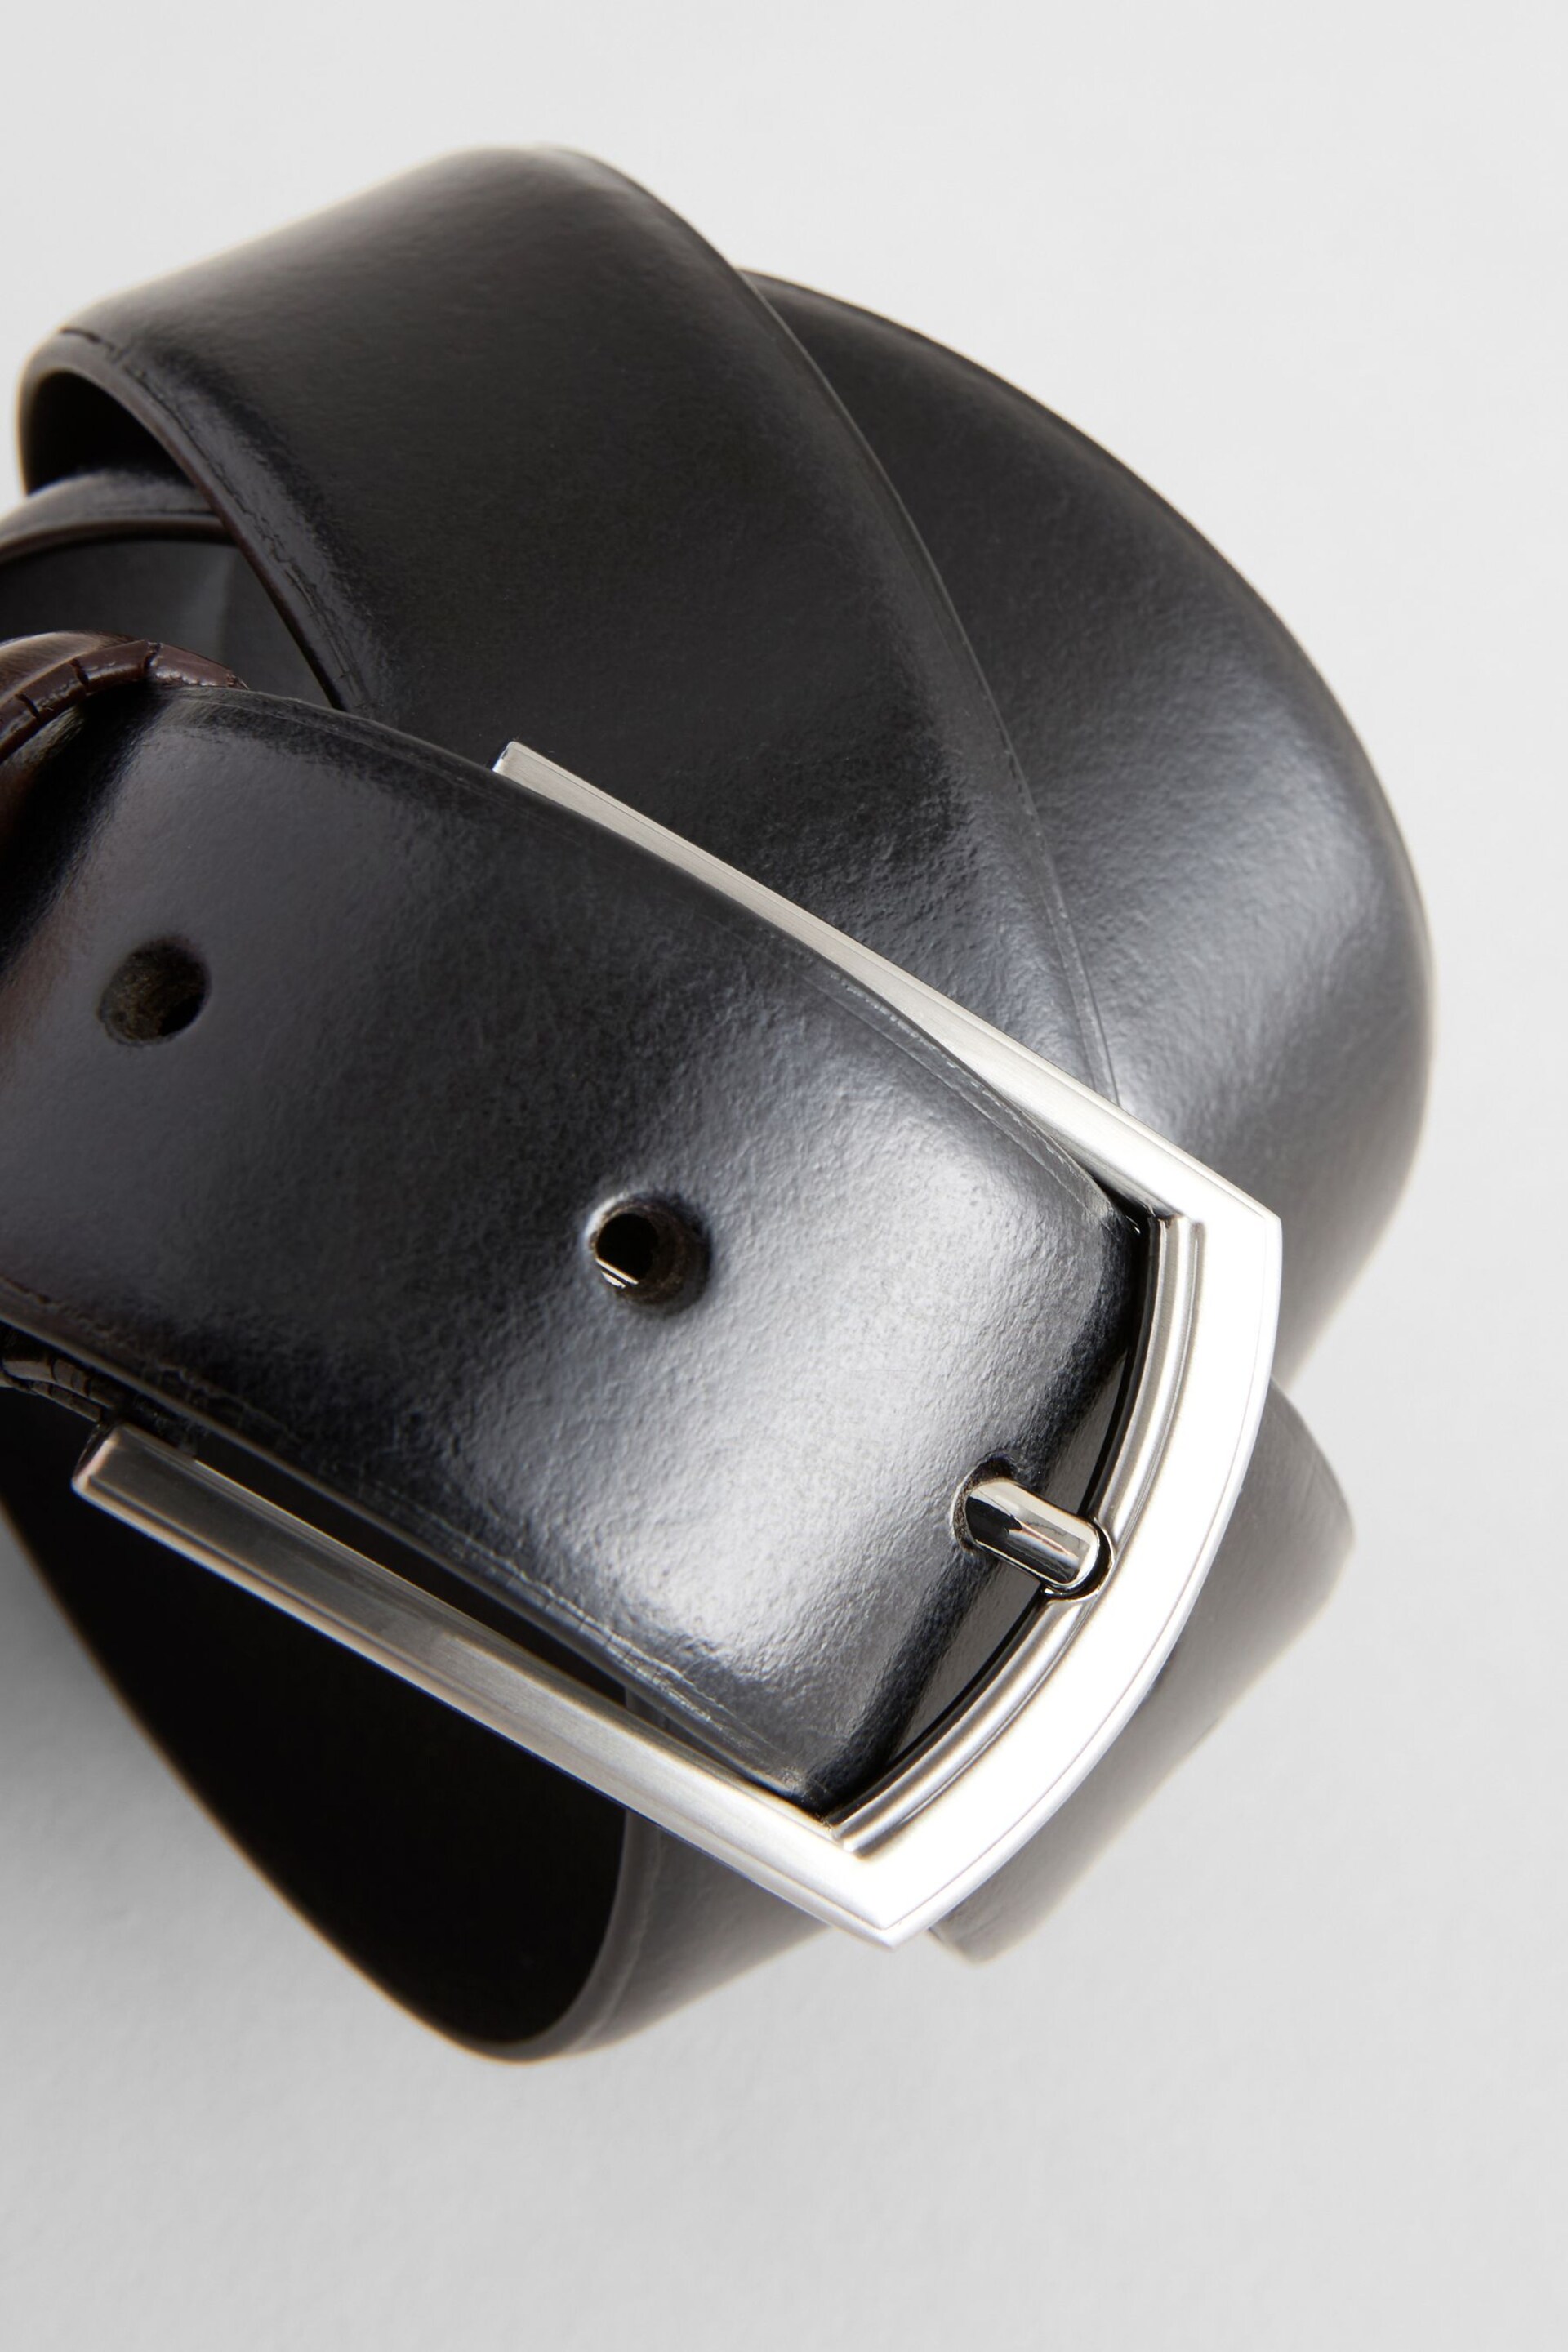 Black Formal Leather Belt - Image 3 of 3